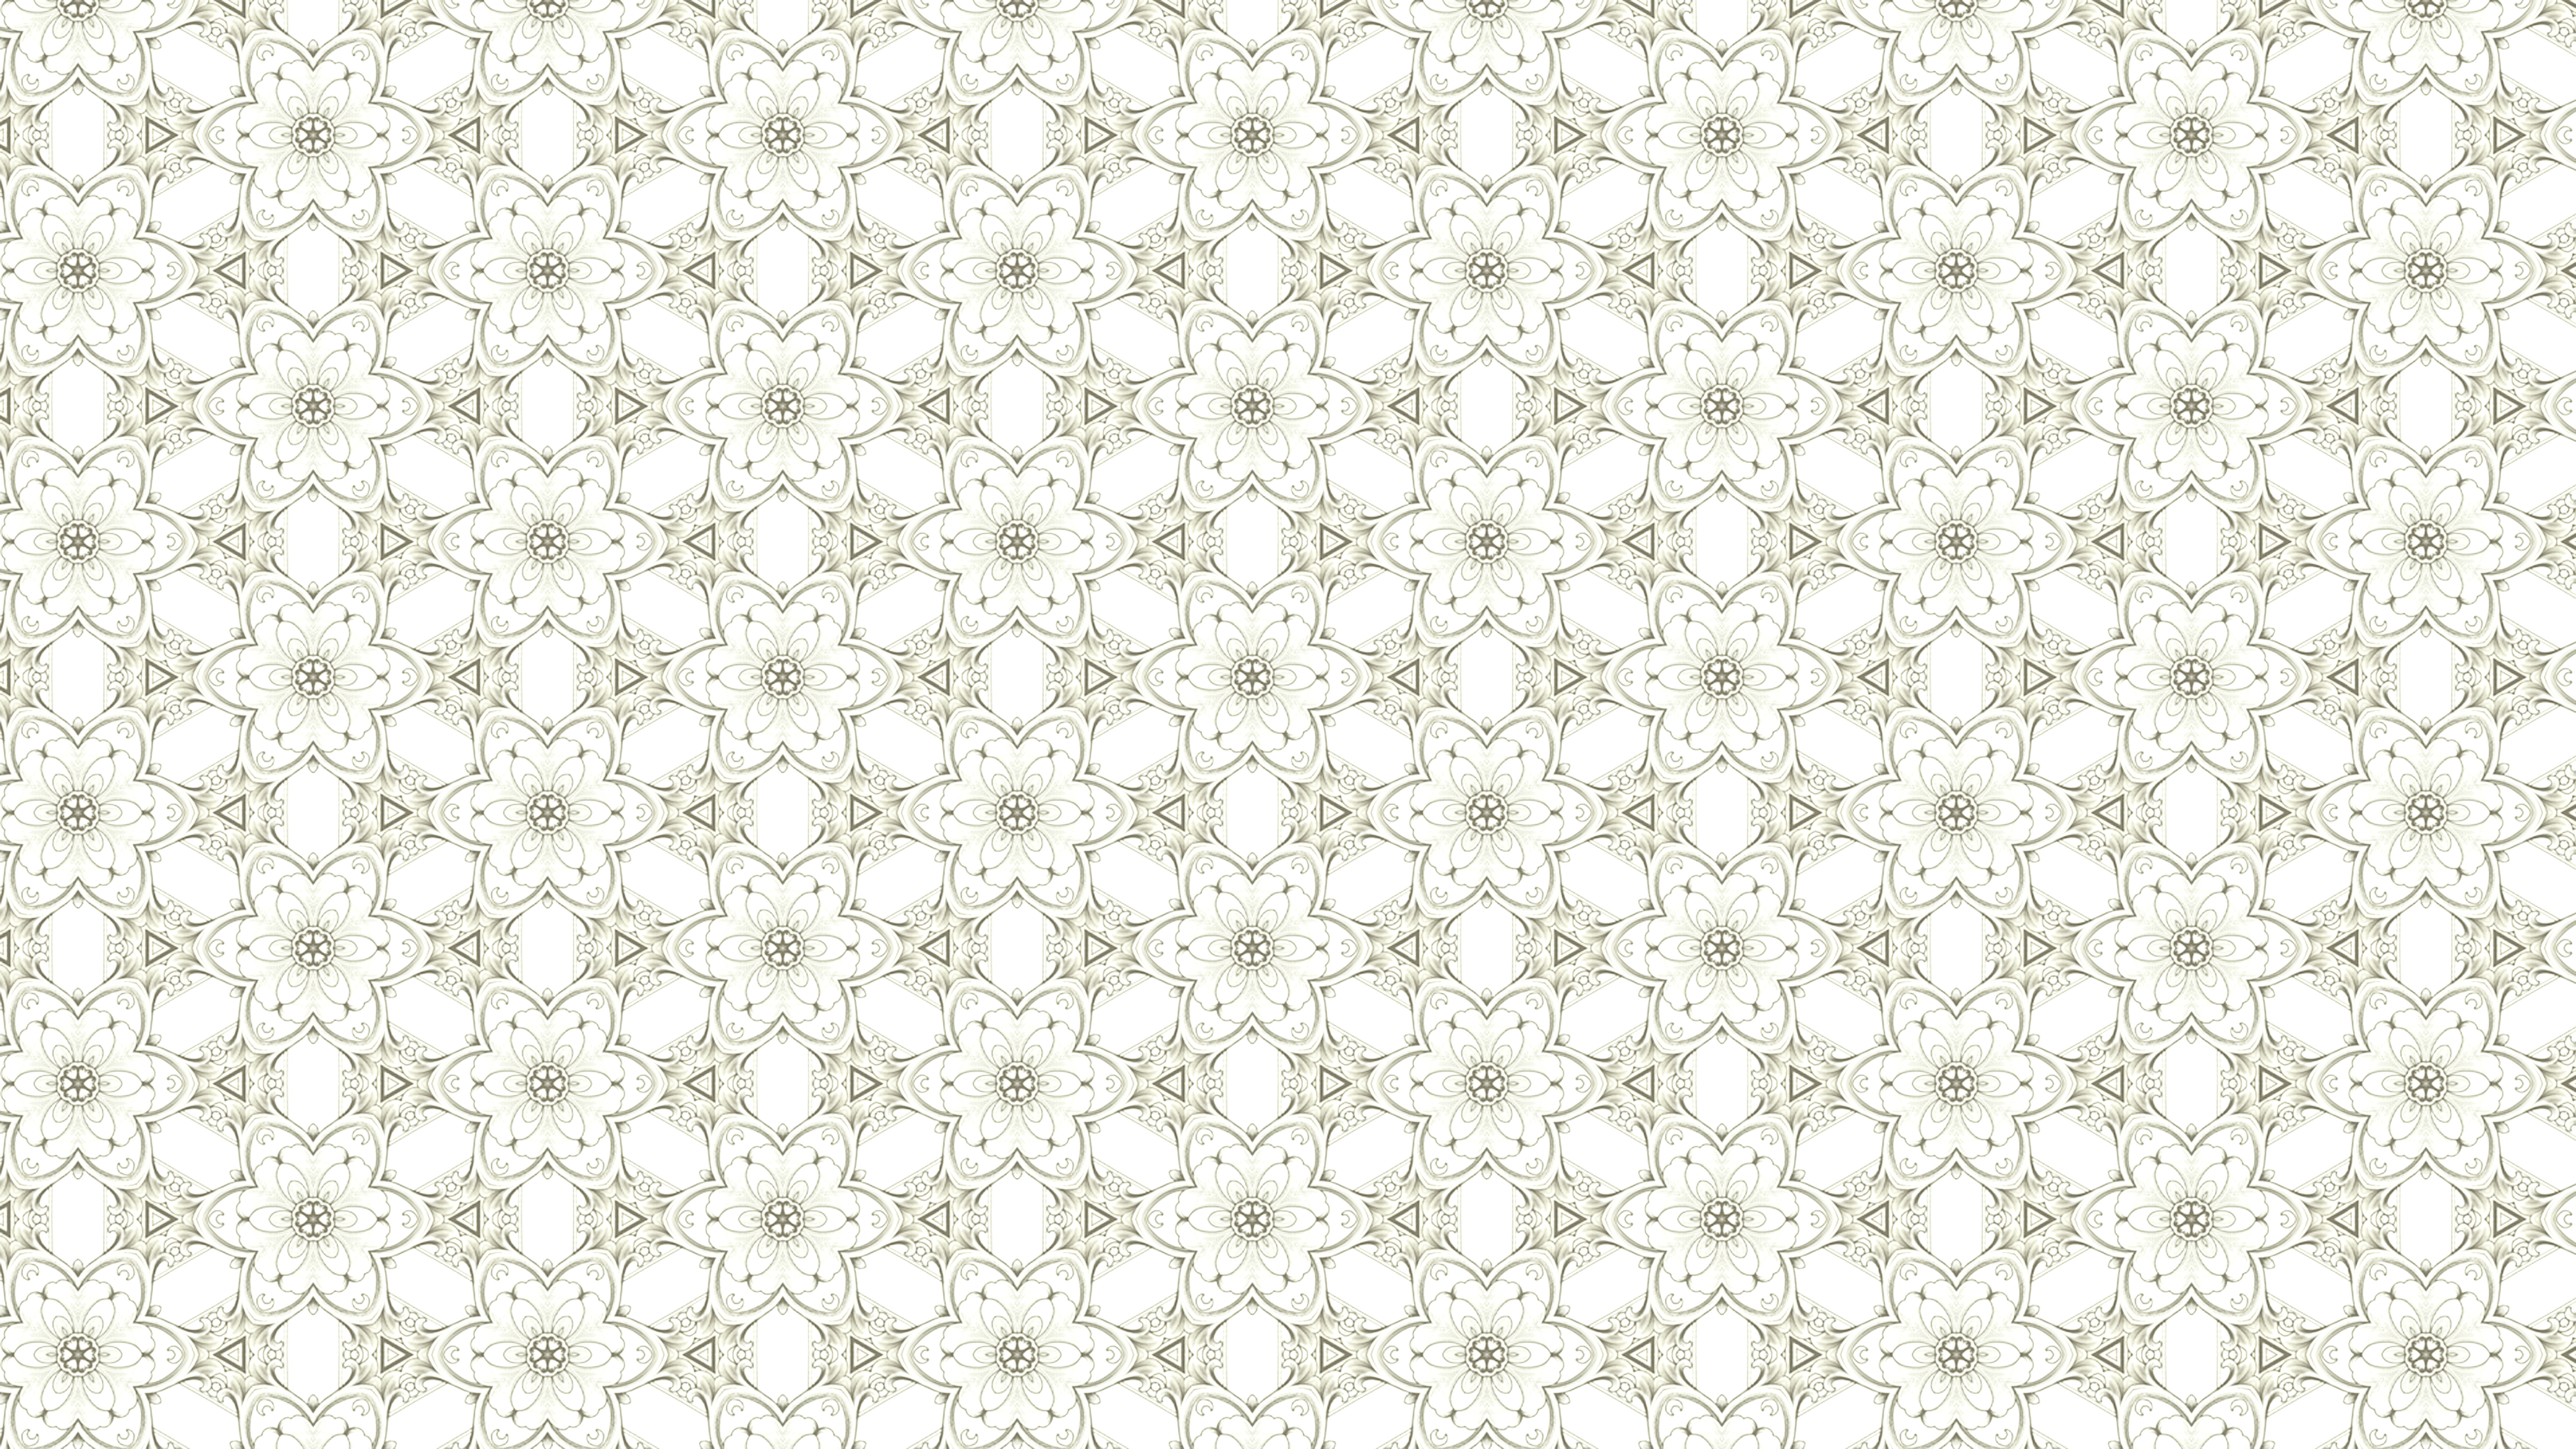 Free Decorative Geometric Seamless Pattern Background